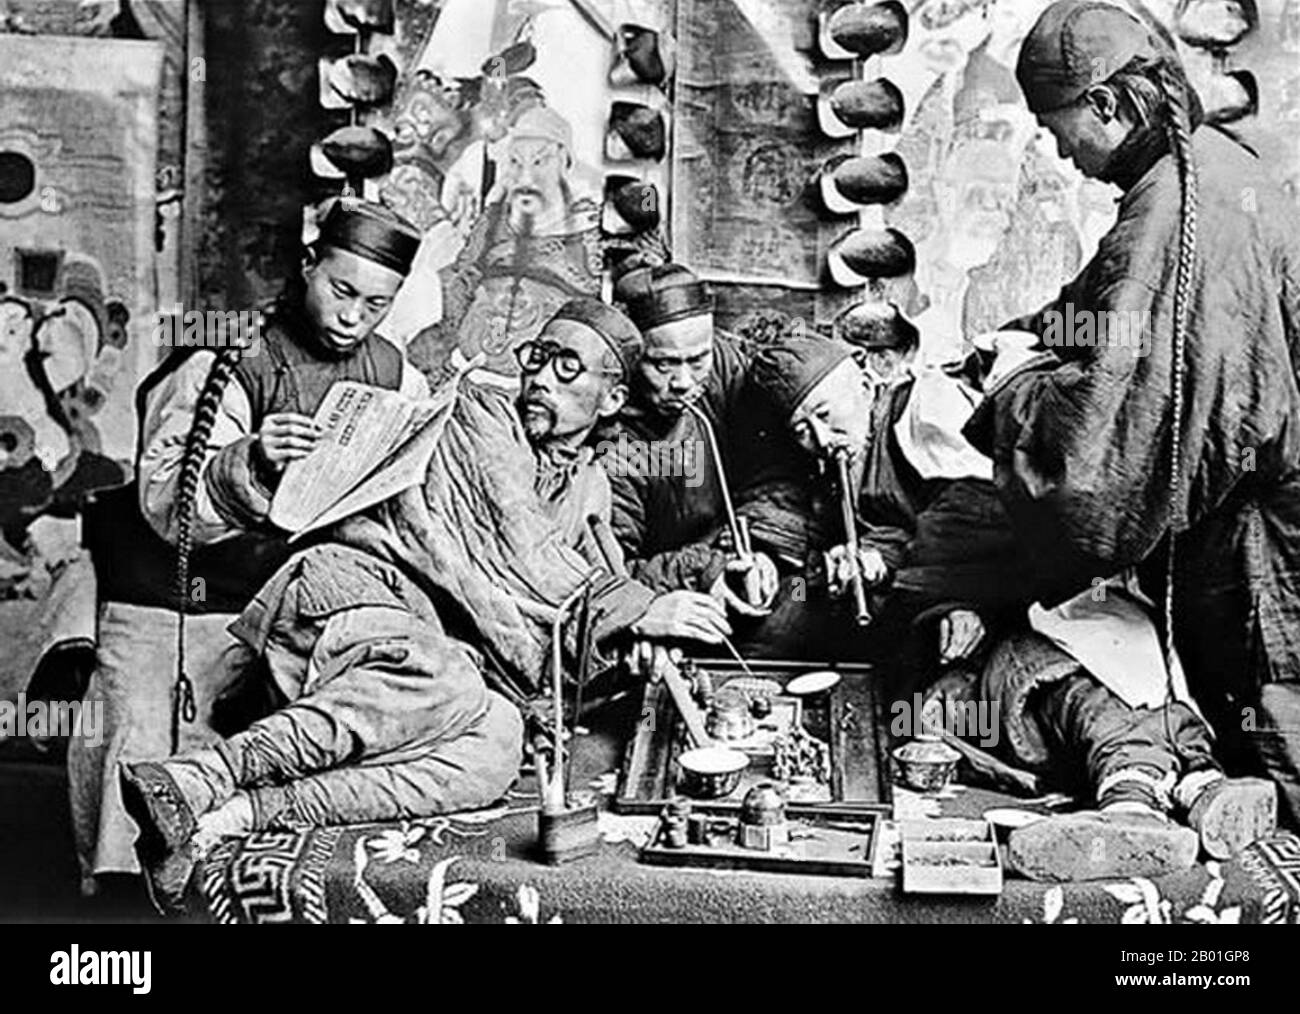 Cina: Una fotografia in posa di un gruppo di fumatori di oppio a Canton, stereoview card, c. 1900. Un'immagine studio che simboleggia una visione Occidentale contemporanea della Cina, tra cui fumo di oppio e code della Dinastia Qing. Foto Stock